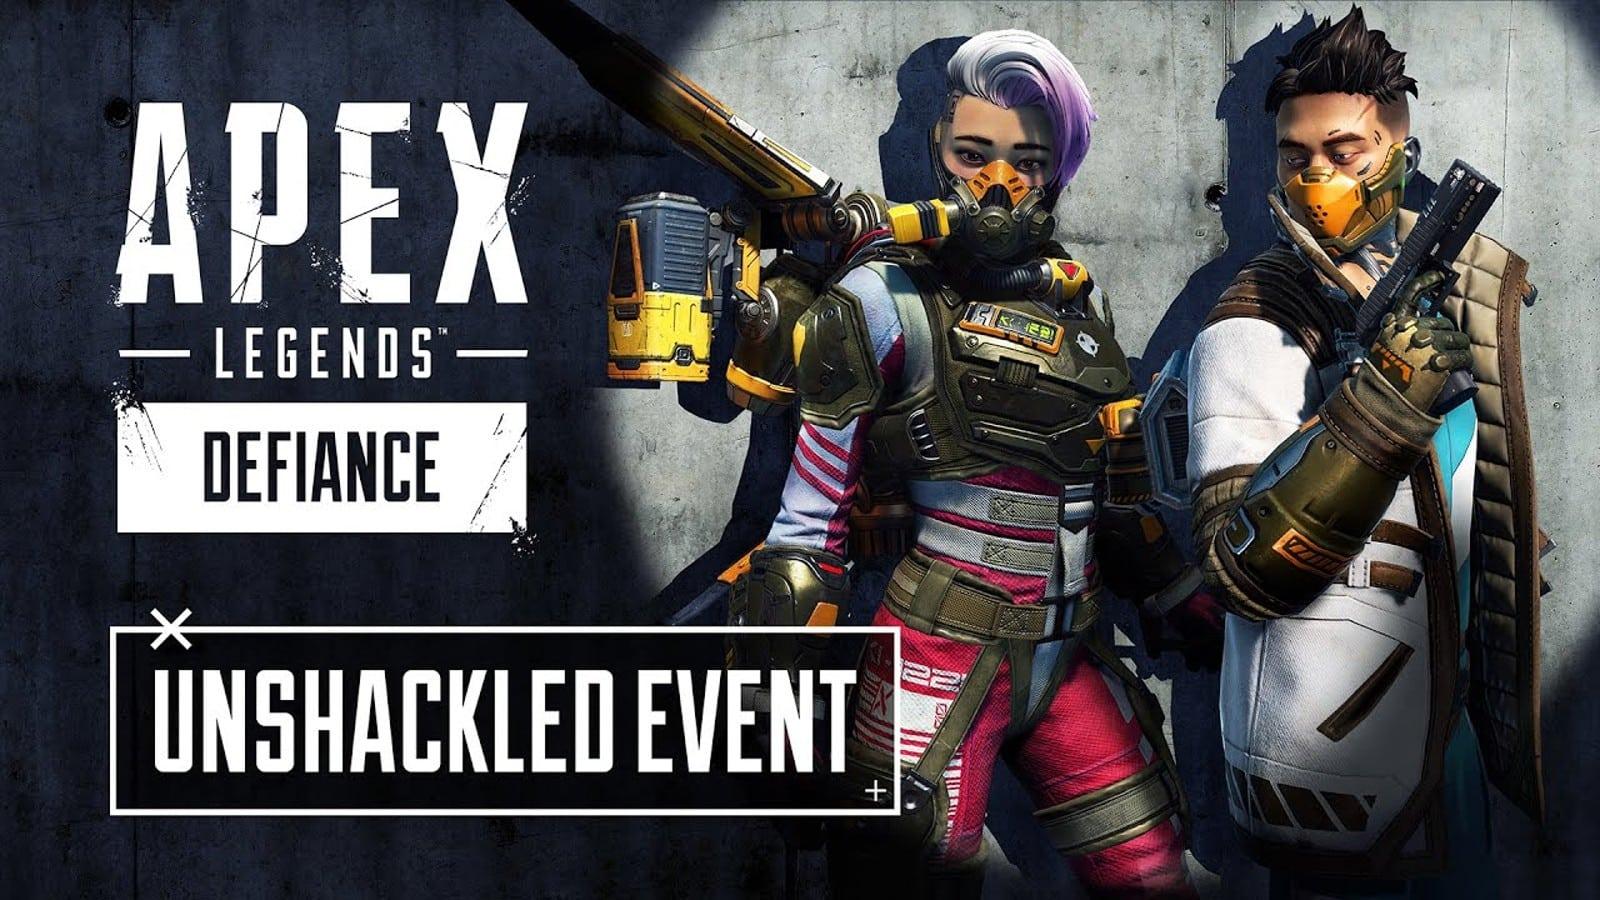 Unshackled event Apex Legends